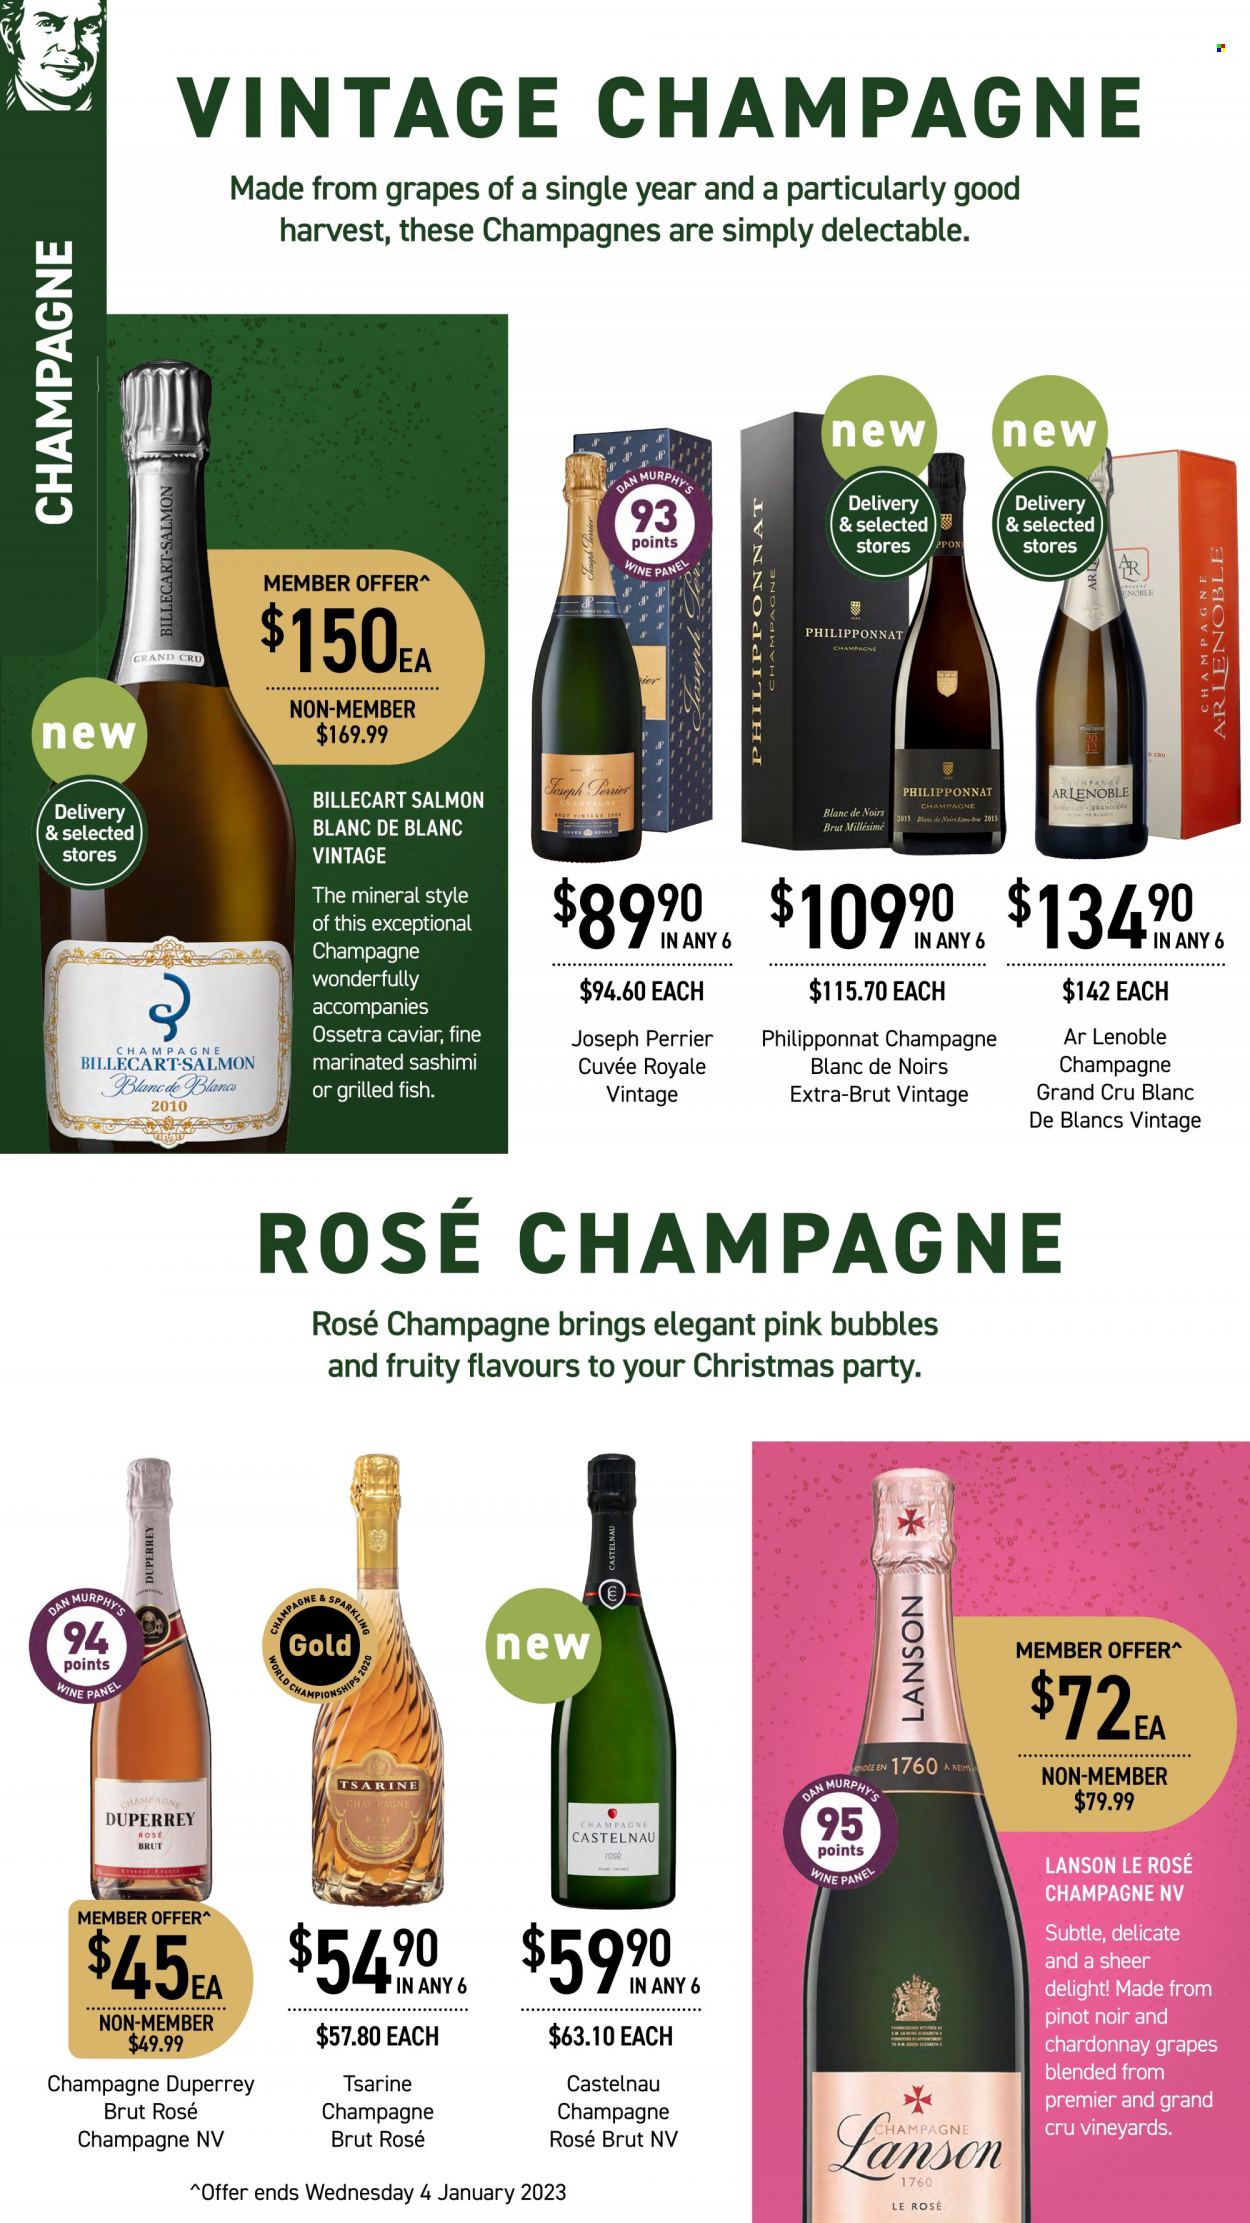 thumbnail - Dan Murphy's Catalogue - 1 Dec 2022 - 14 Dec 2022 - Sales products - red wine, champagne, Pinot Noir, Cuvée, Lanson, rosé wine. Page 6.